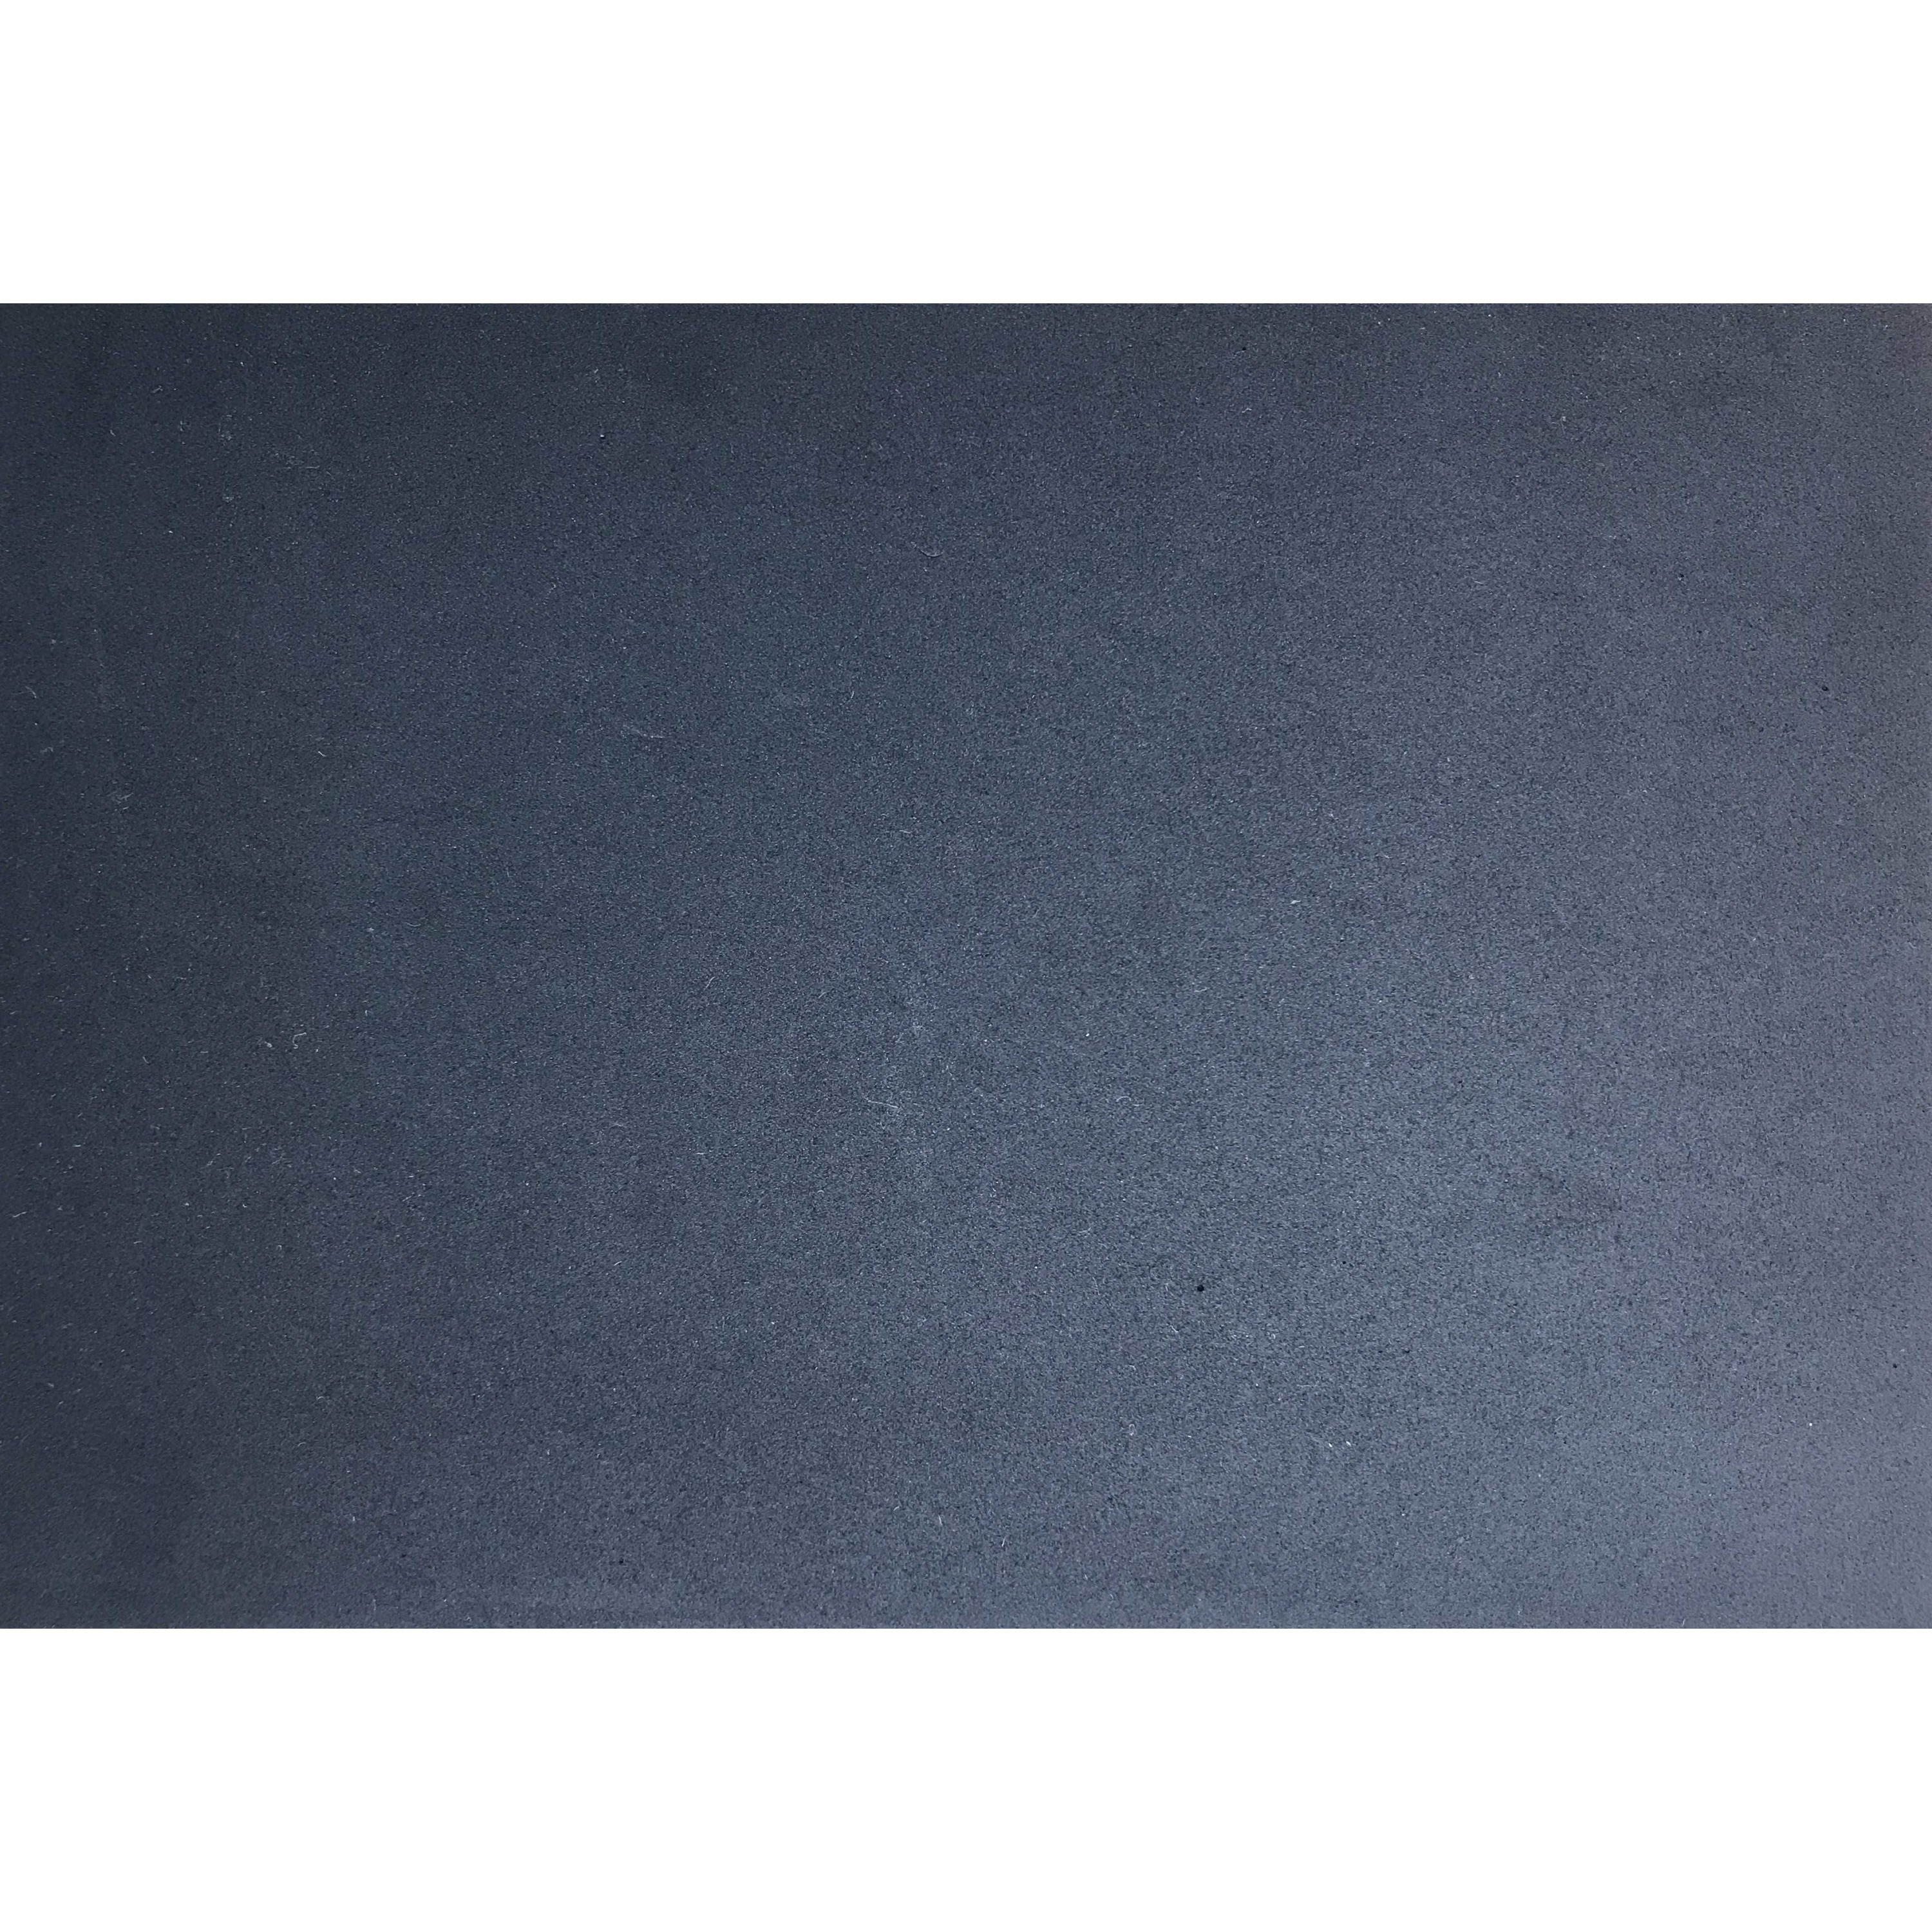 Crepla knutsel foam rubber zwart 20 x 30 cm